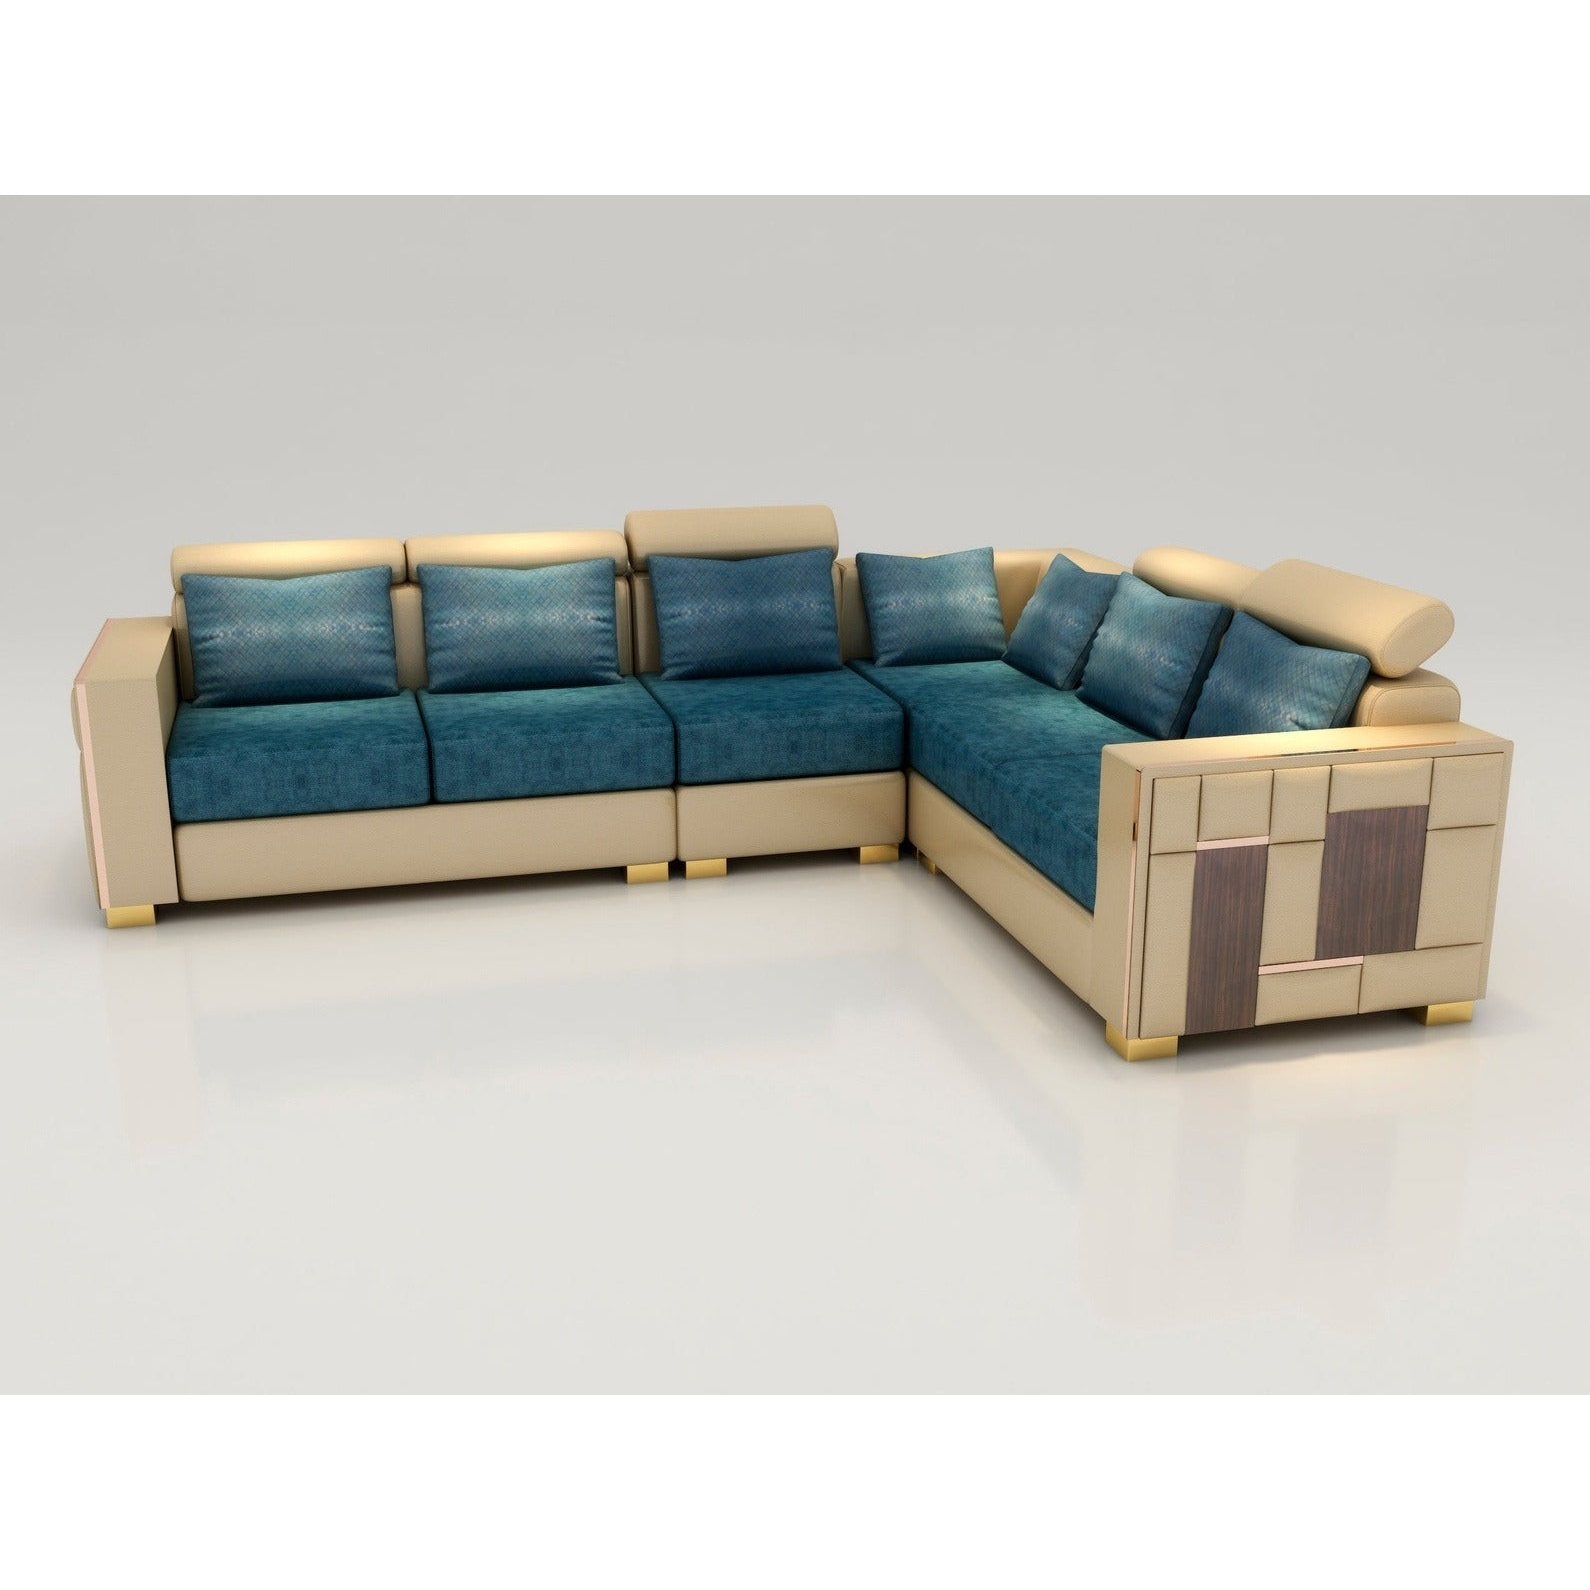 VR 175 DENMARK L-SHAPE SOFA SET Mobel Furniture